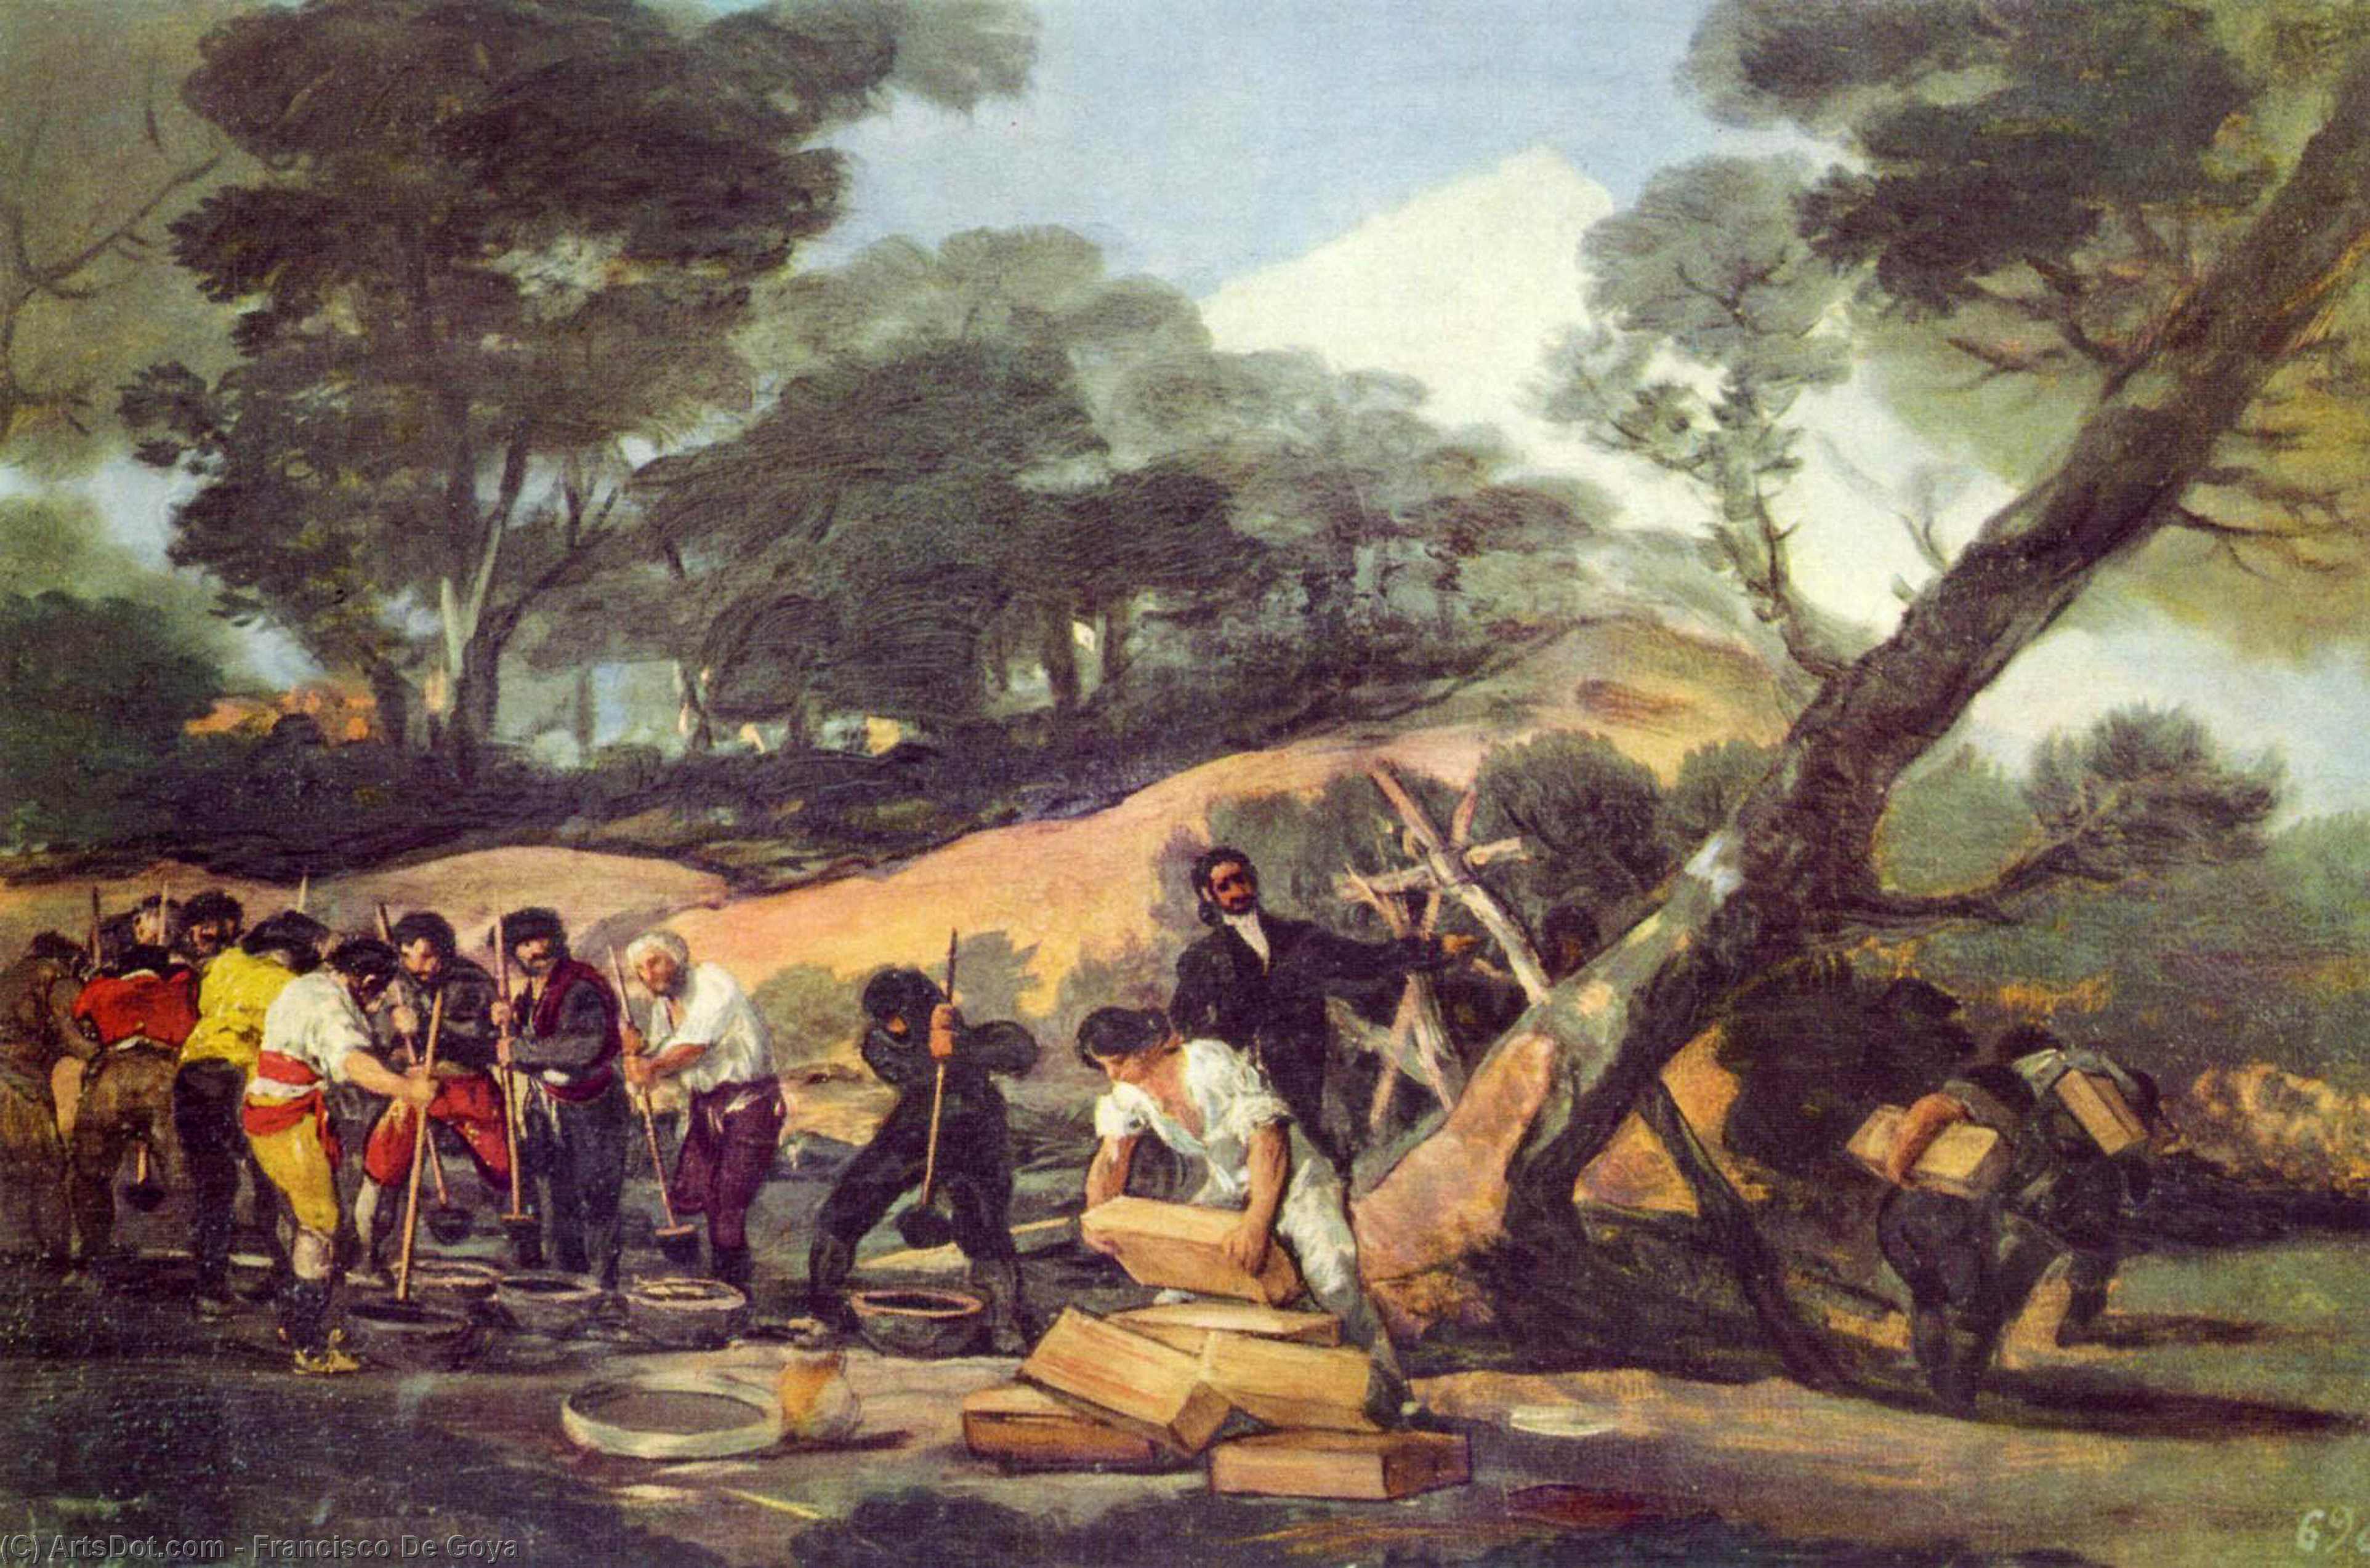 Wikioo.org – La Enciclopedia de las Bellas Artes - Pintura, Obras de arte de Francisco De Goya - en polvo fábrica en el sierra